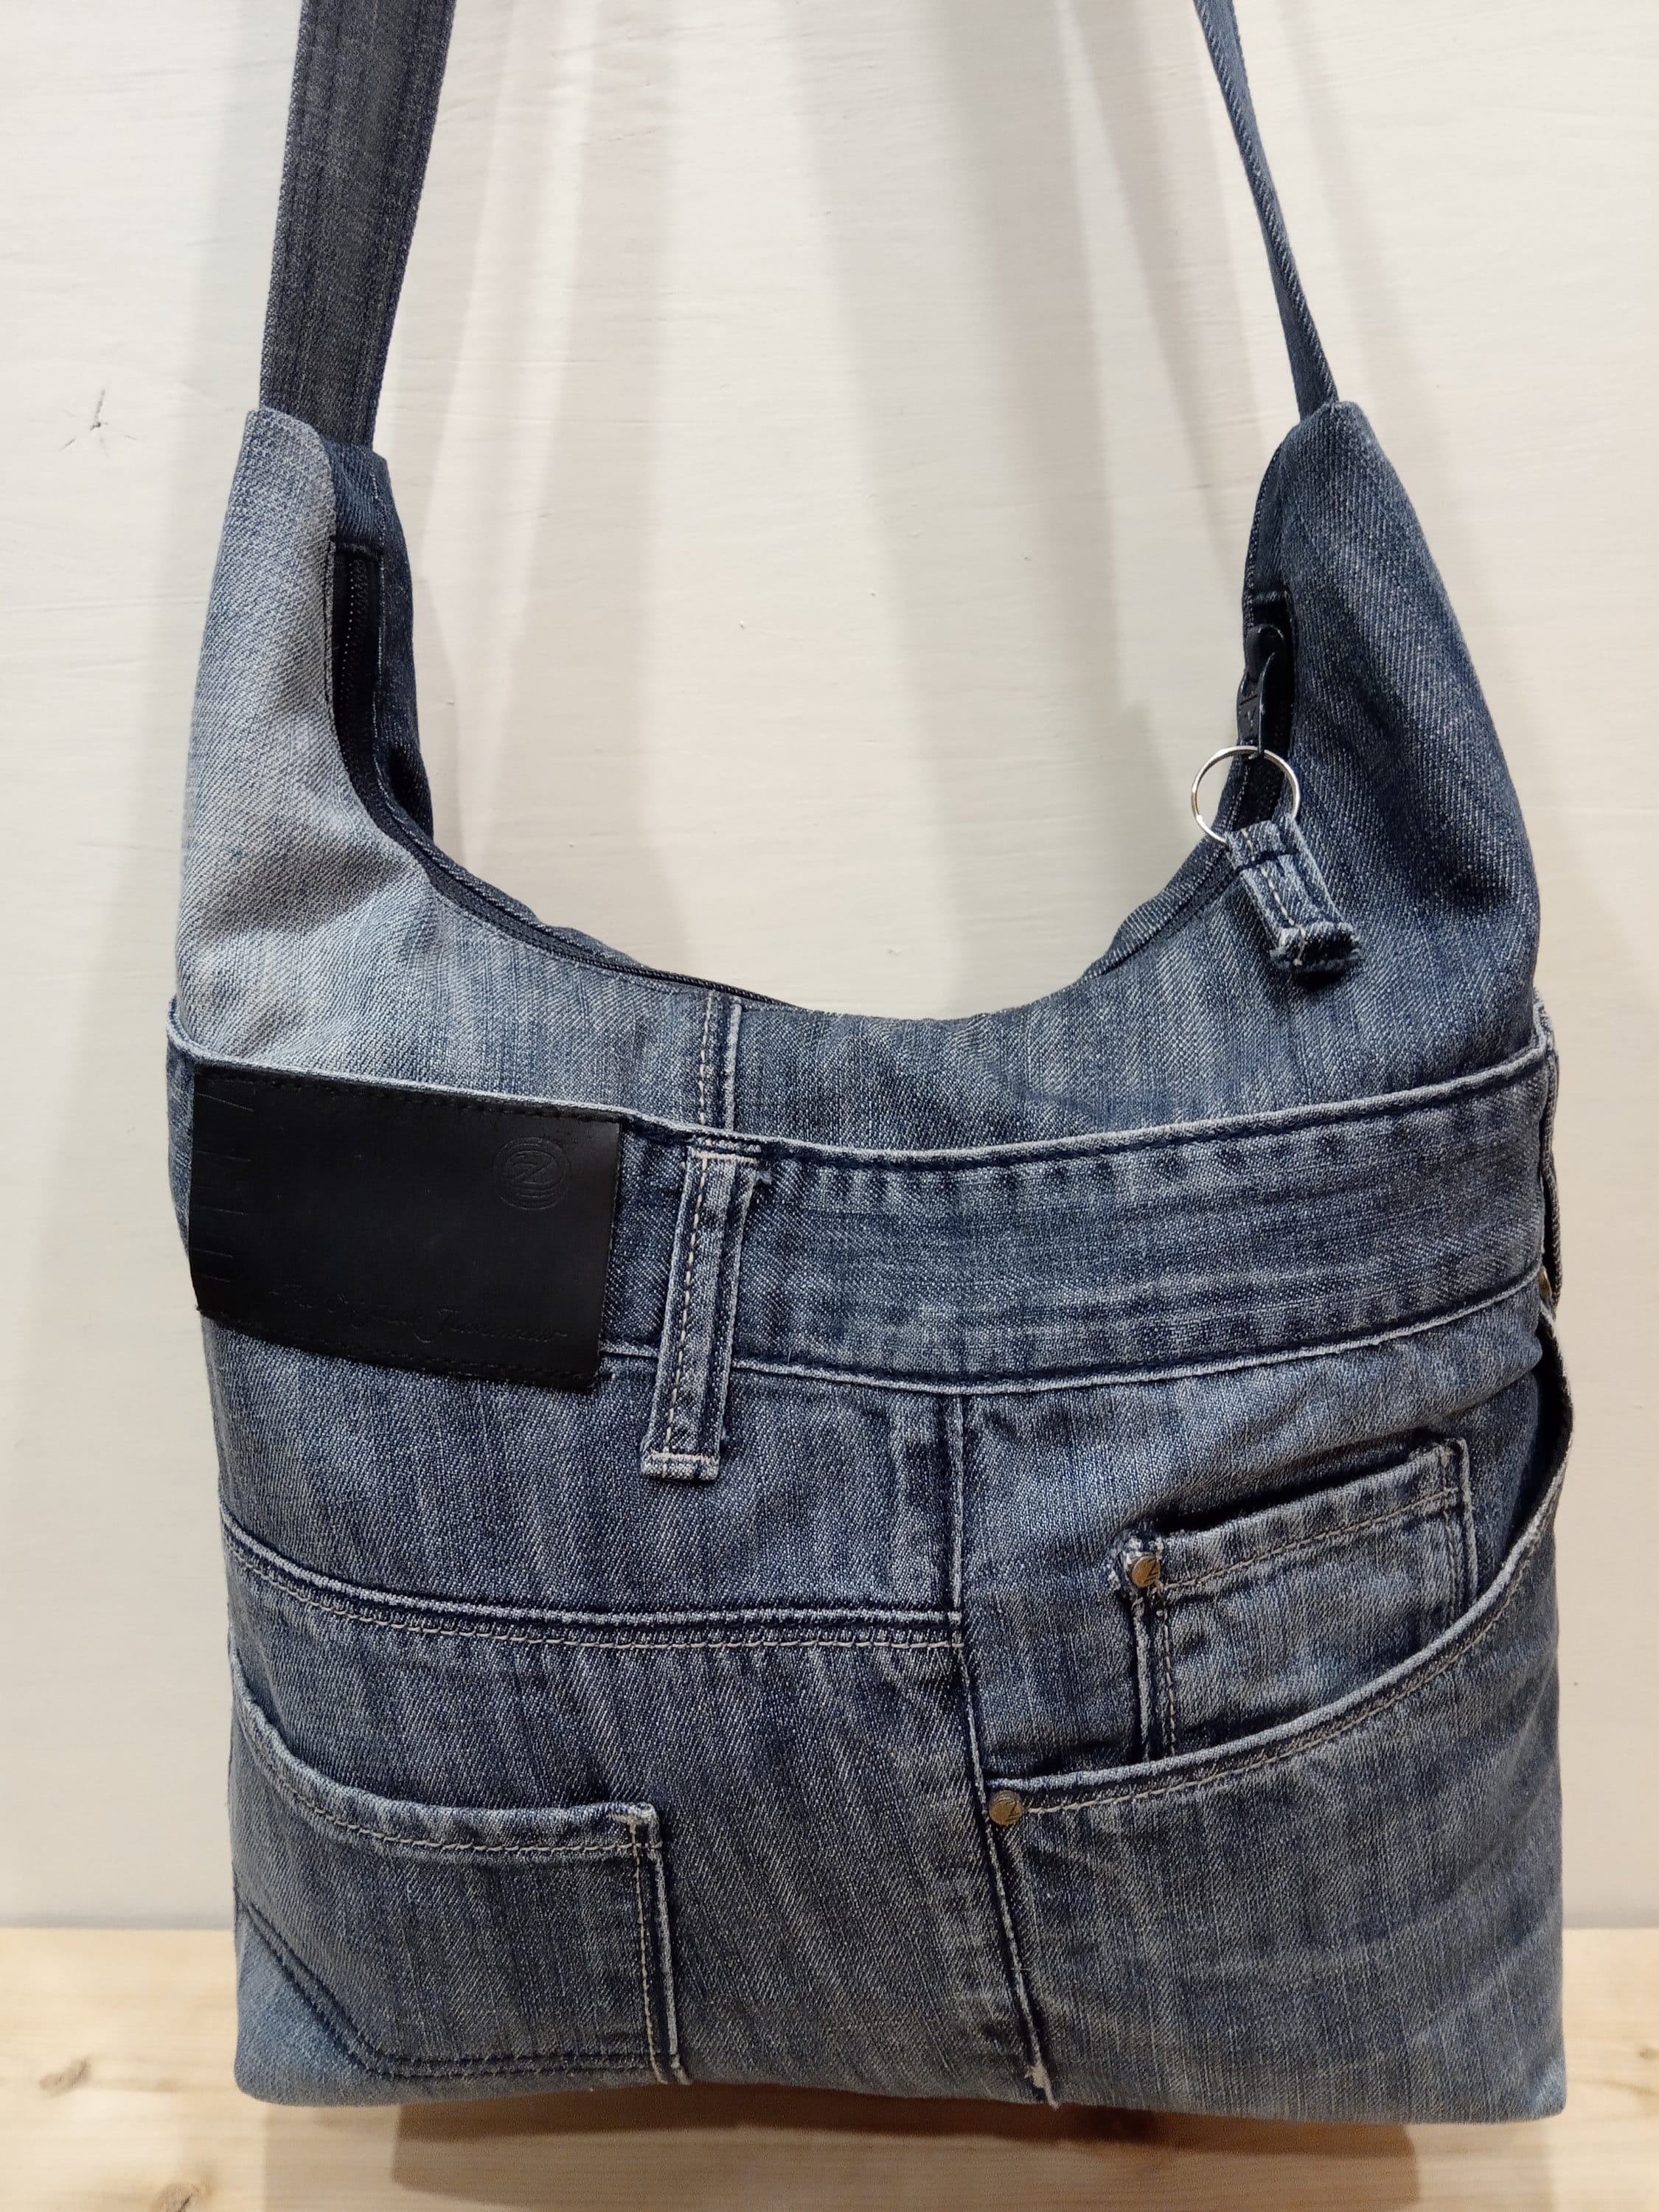 Denim shoulder bag jeans hobo bag upcycled jeans purse | Etsy